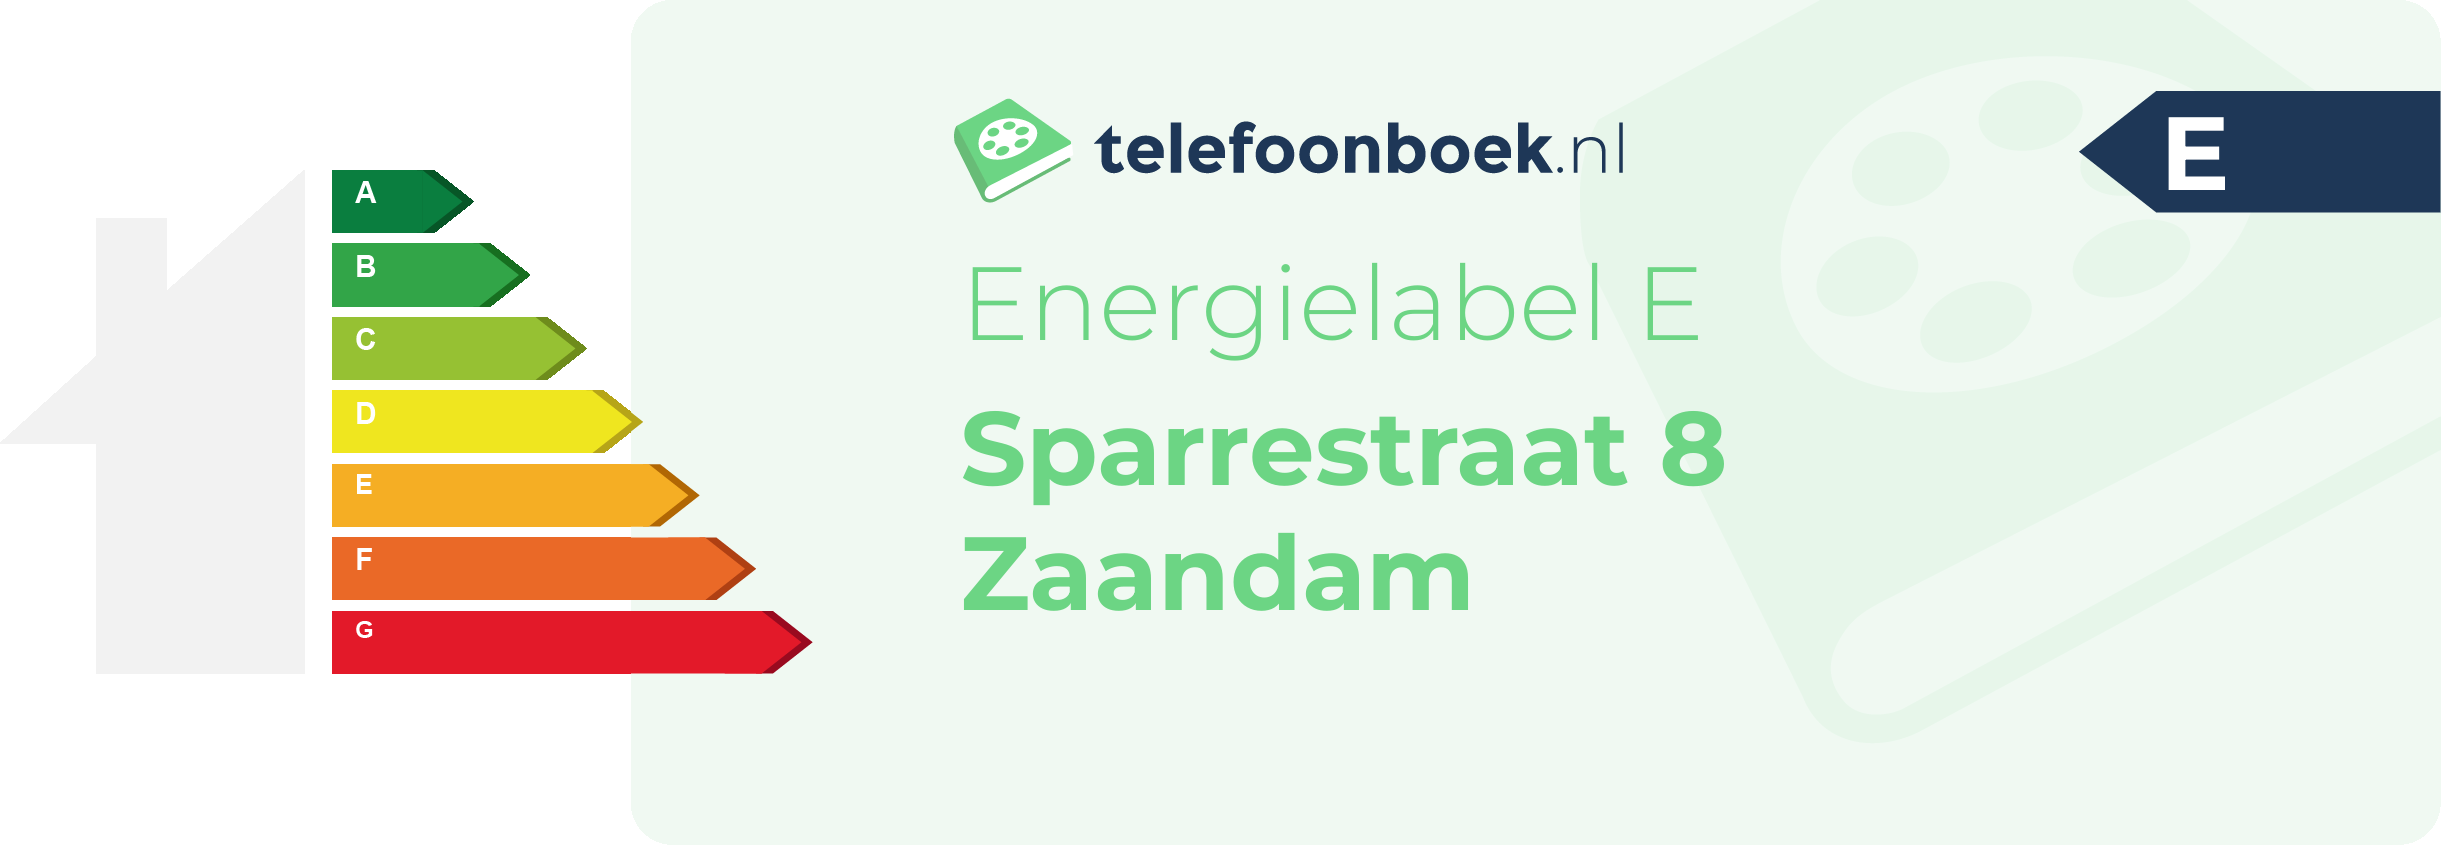 Energielabel Sparrestraat 8 Zaandam